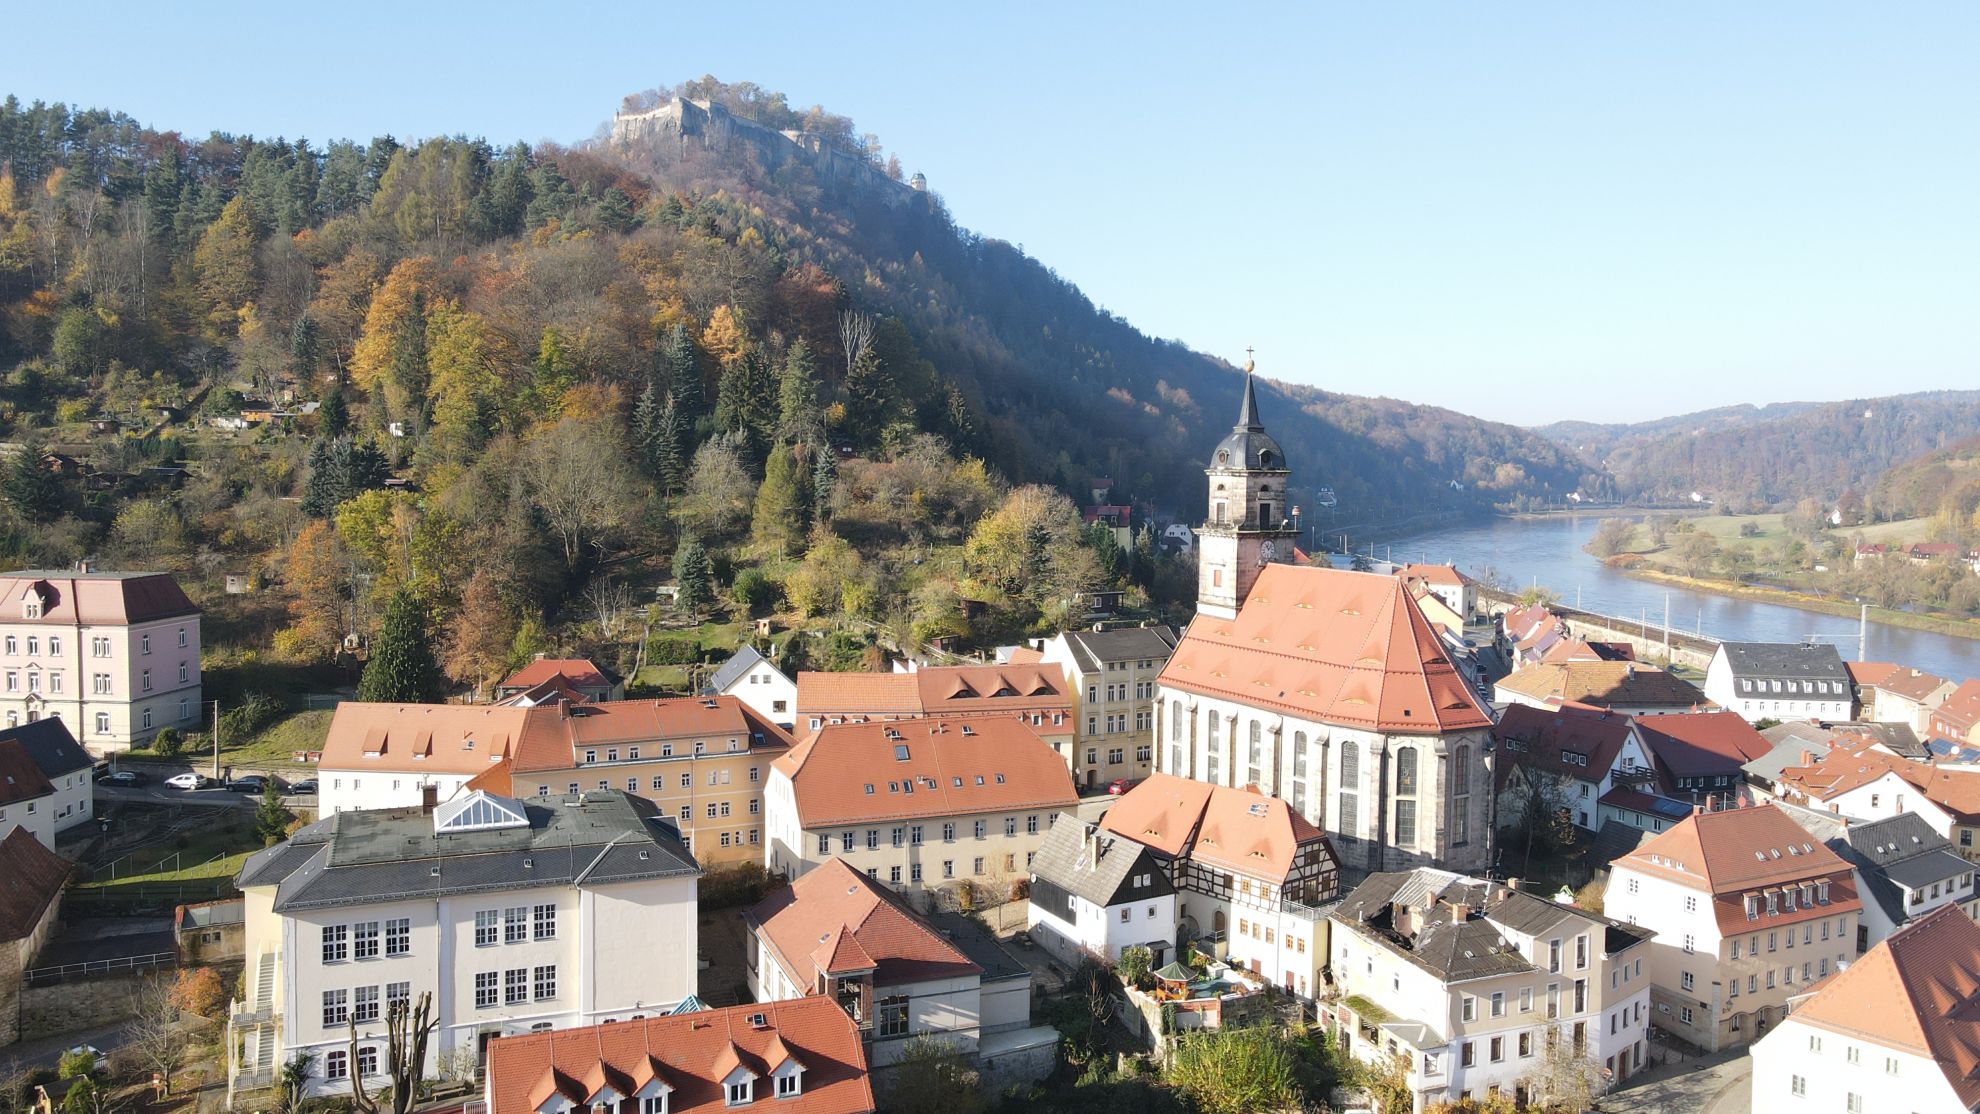 Bild mit Blick auf die Festung Königstein, rechts im Tal fließt die Elbe